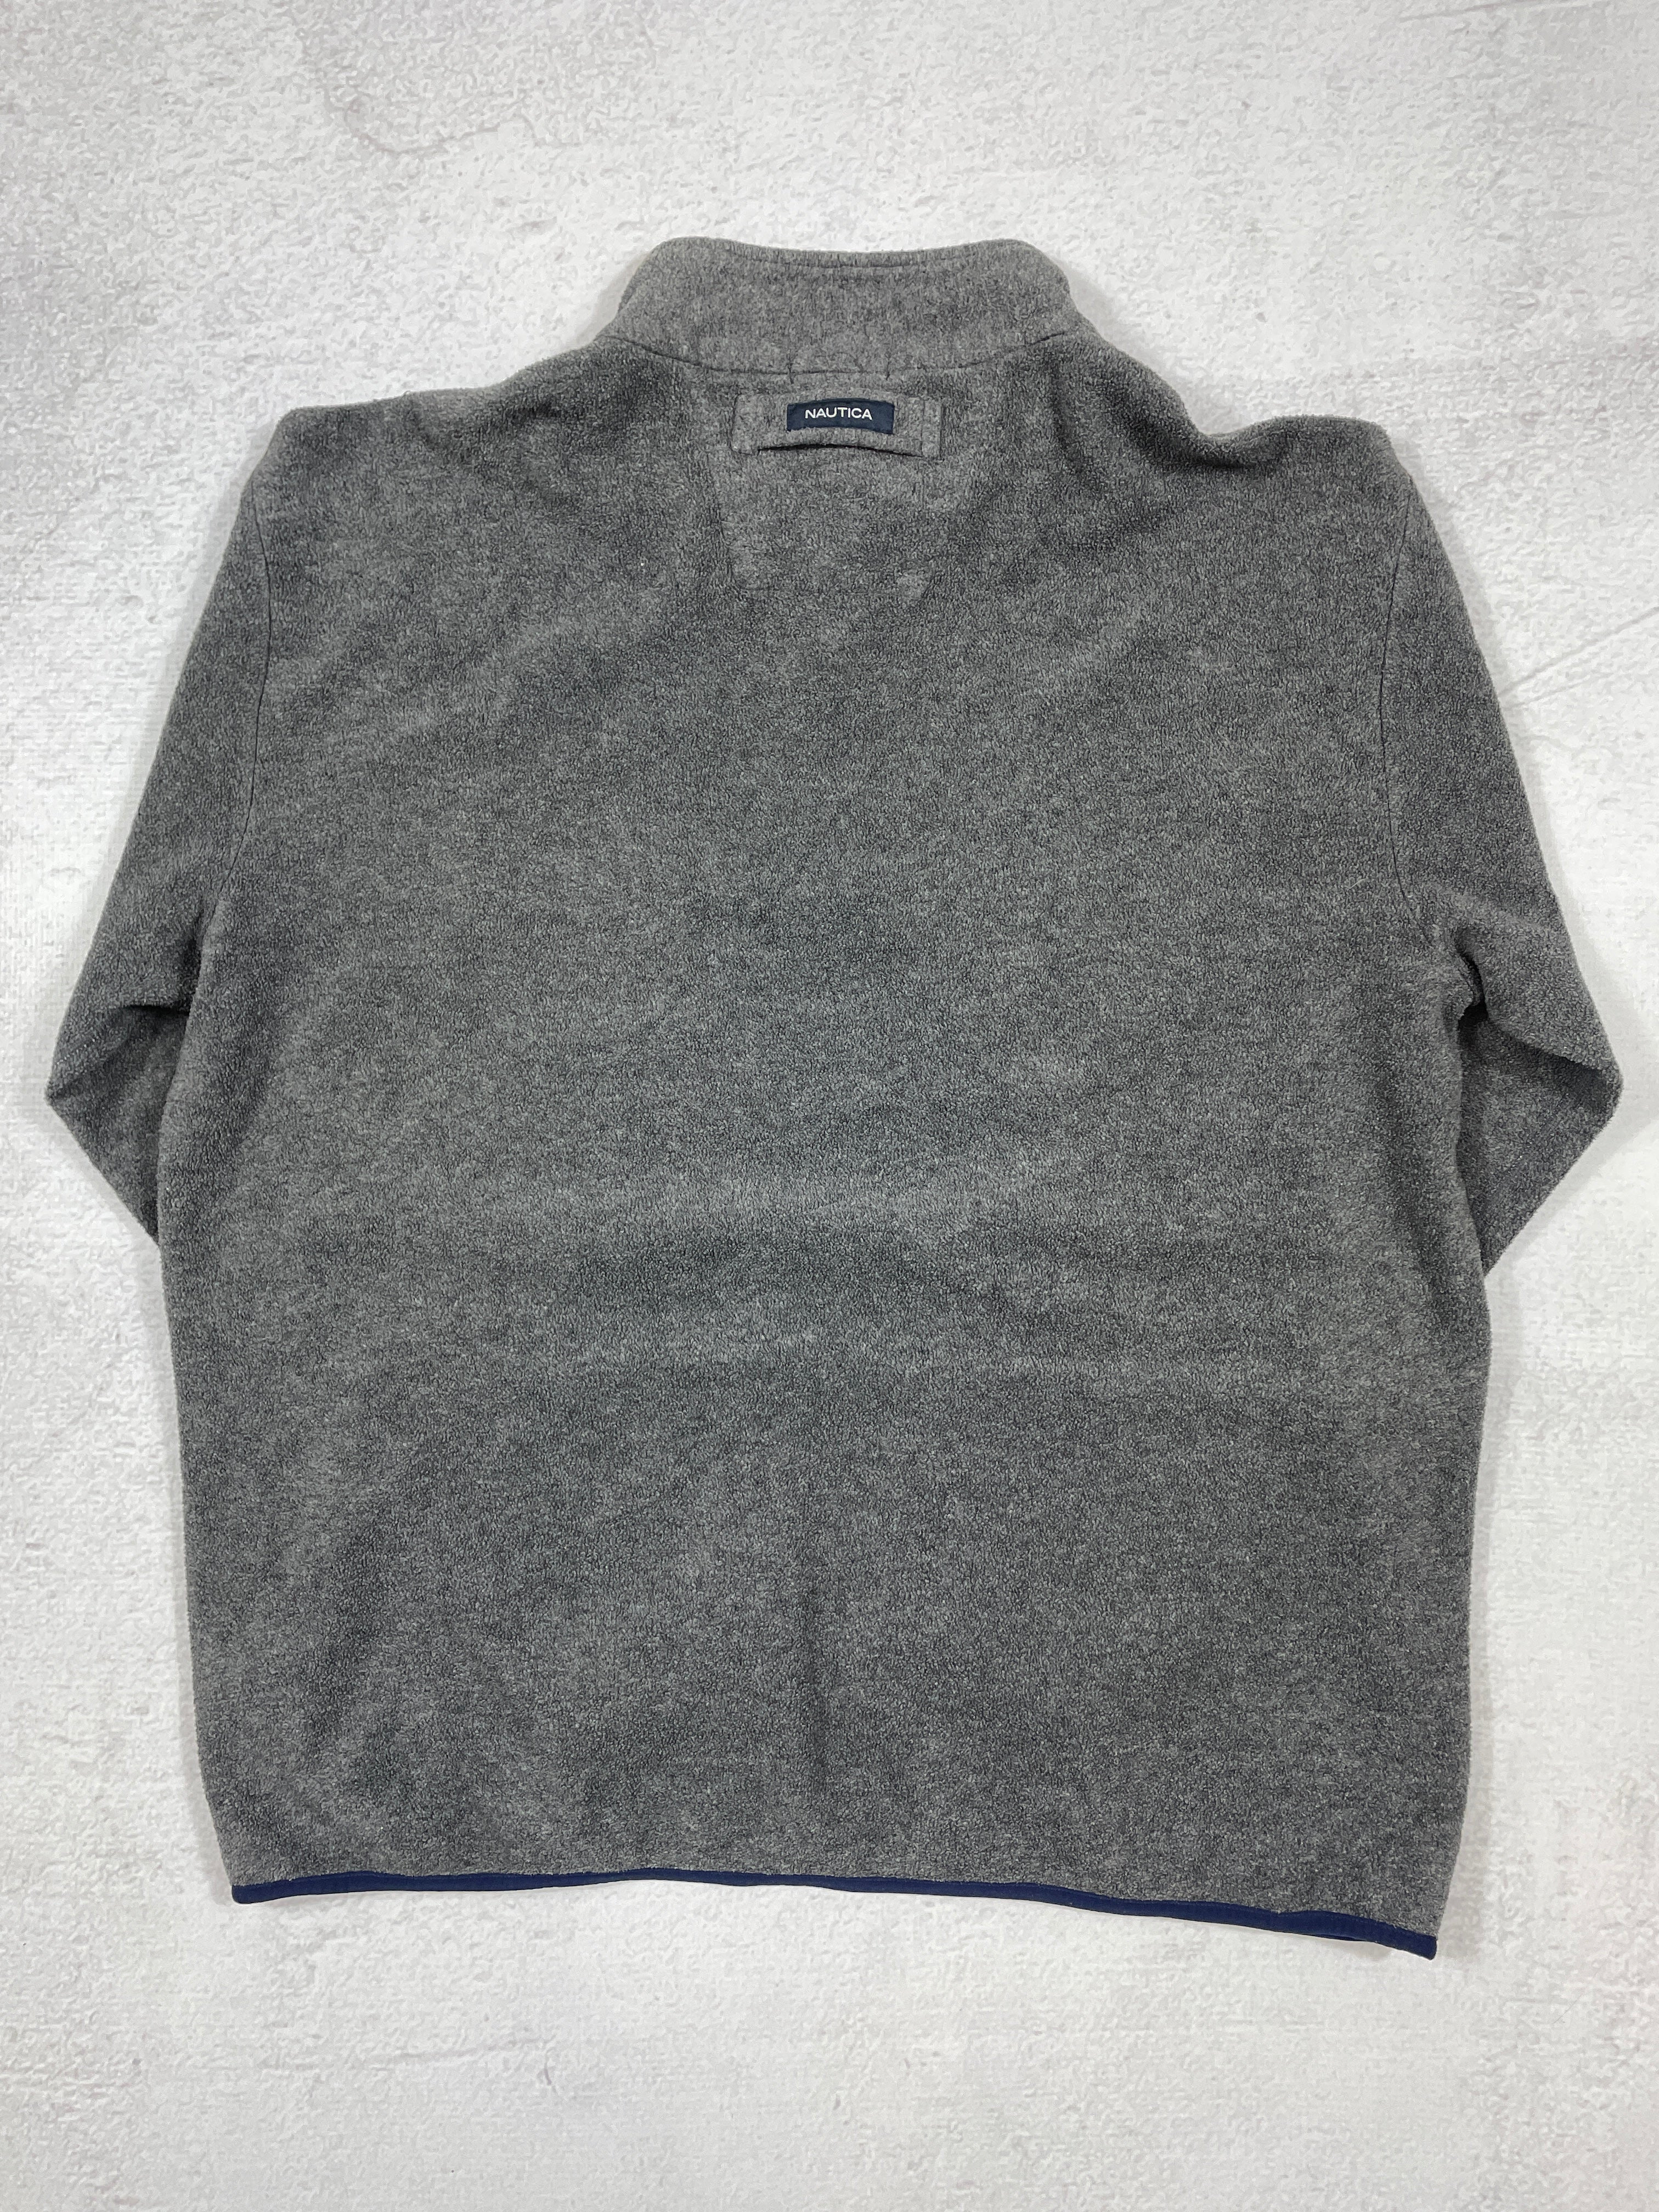 Vintage Nautica 1/4 Zip Fleece Sweatshirt - Men's 2XL